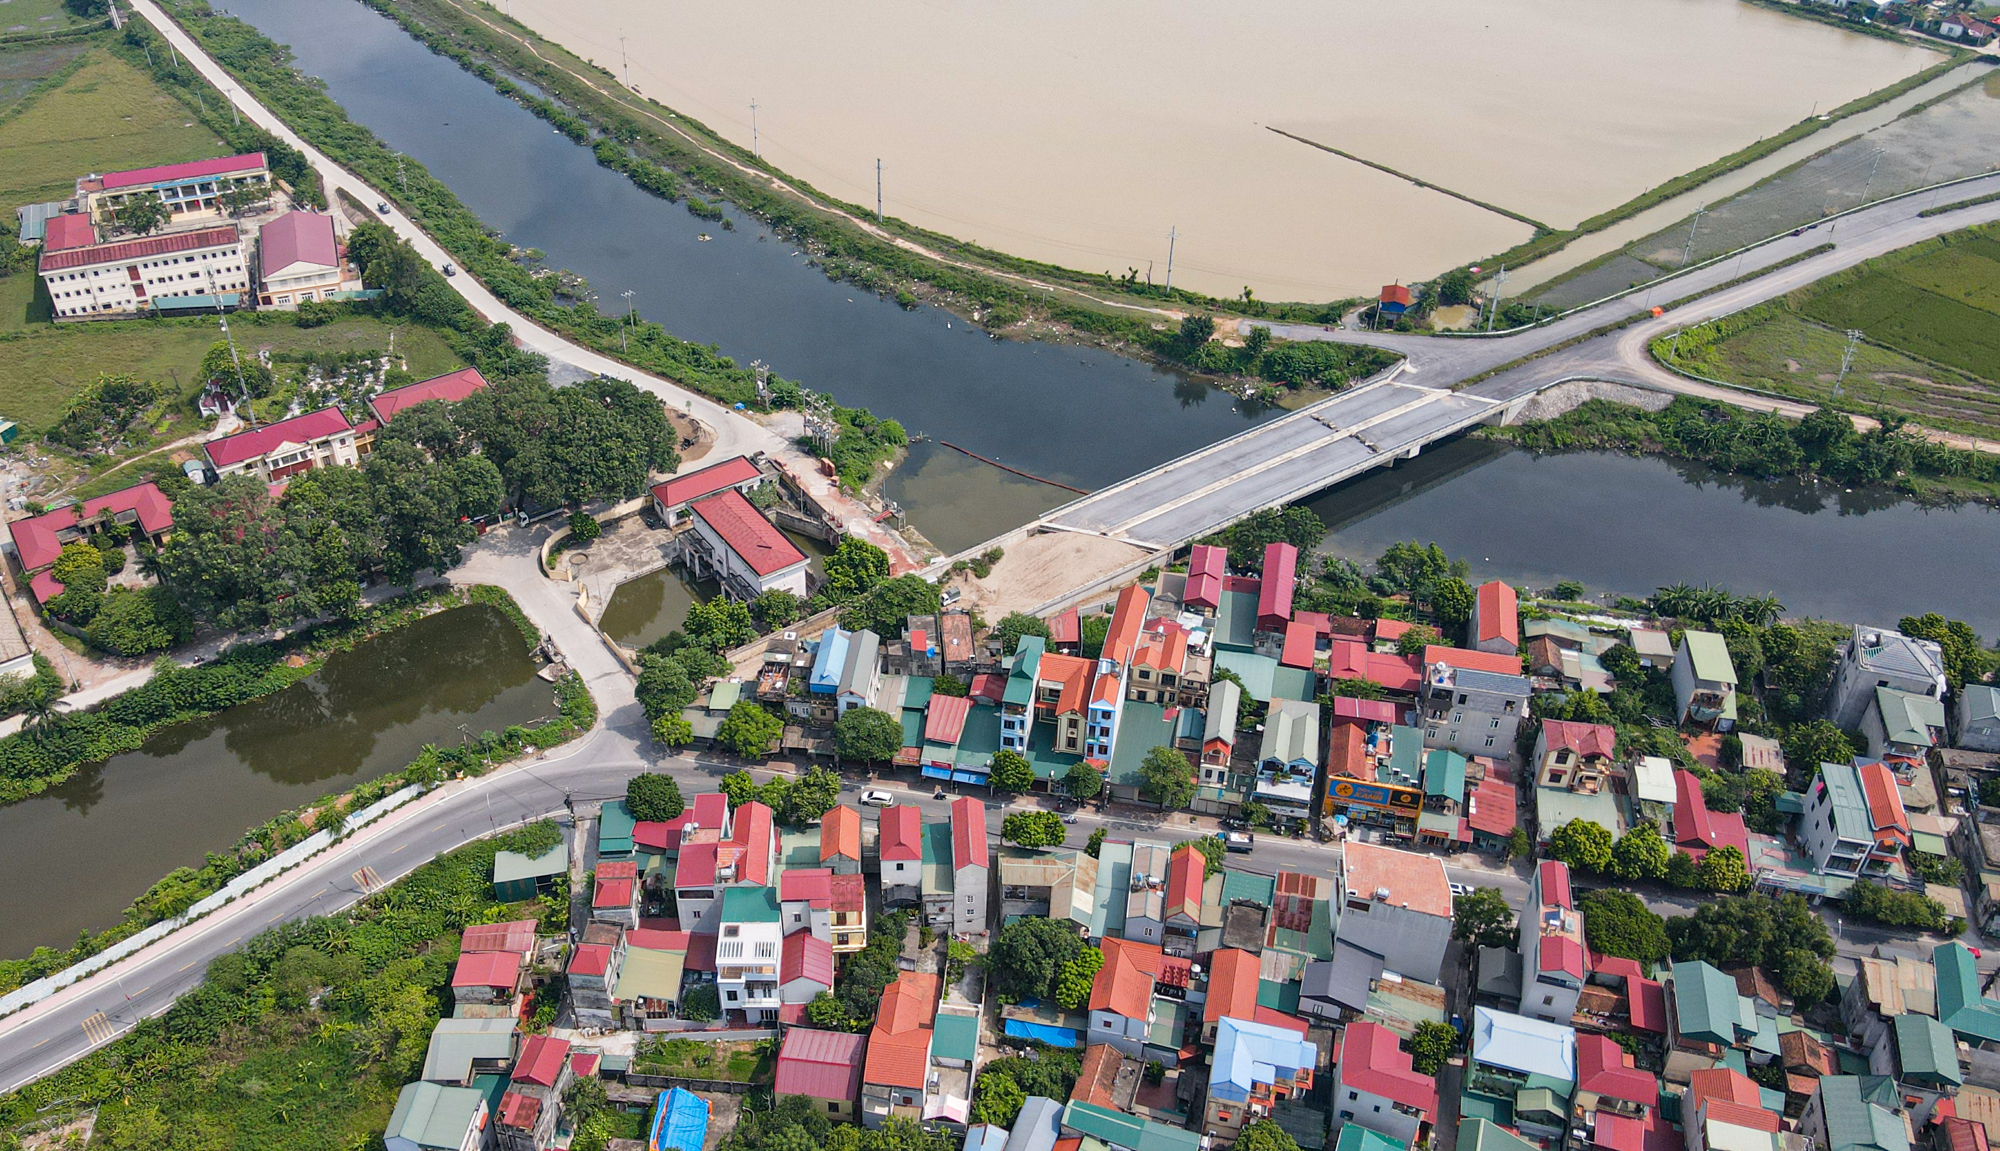 Ảnh, clip: Cây cầu trăm tỷ ở ngoại thành Hà Nội sắp hoàn thành nhưng bị bỏ không gần 2 năm - Ảnh 1.